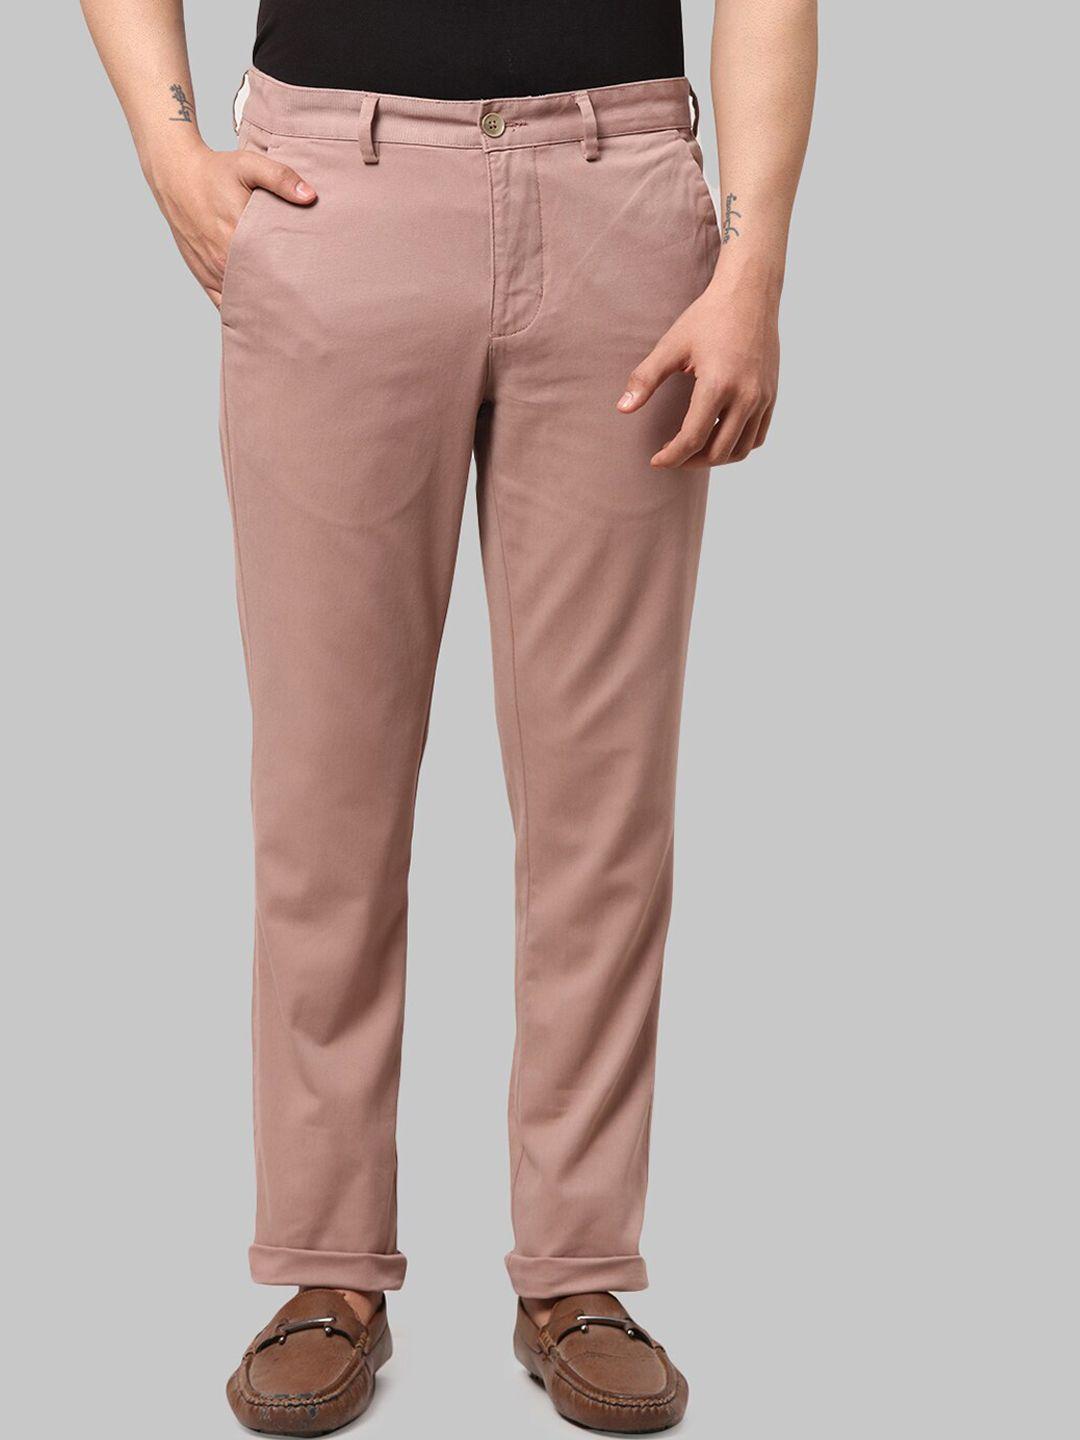 park-avenue-men-maroon-cotton-causal-trousers